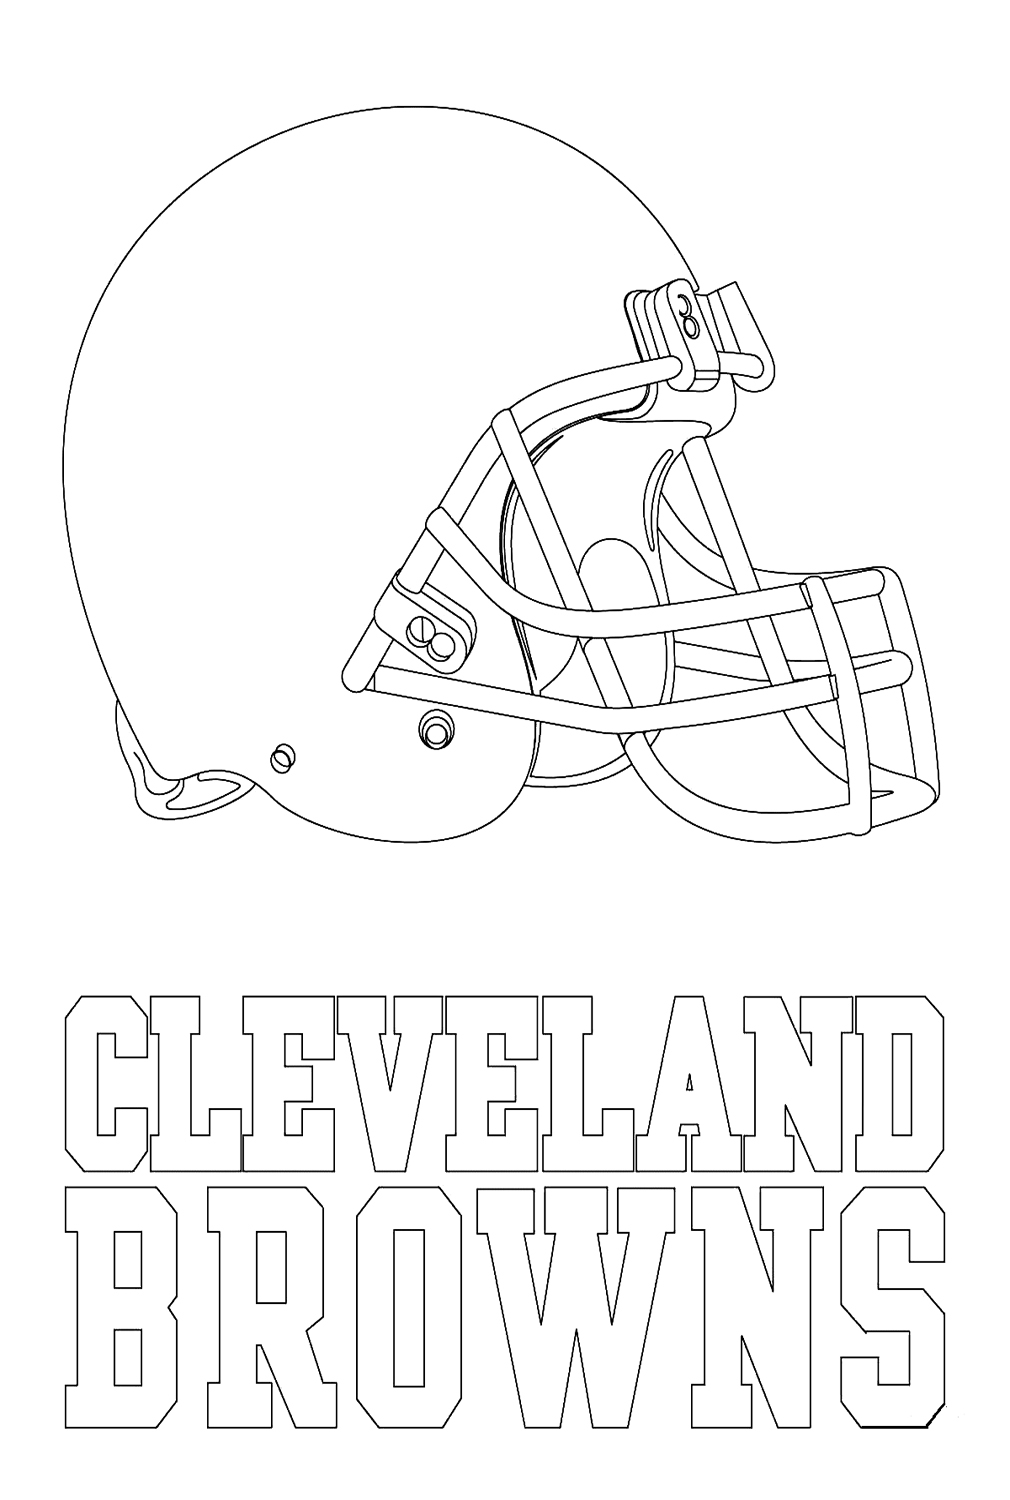 Логотип Кливленд Браунс из НФЛ